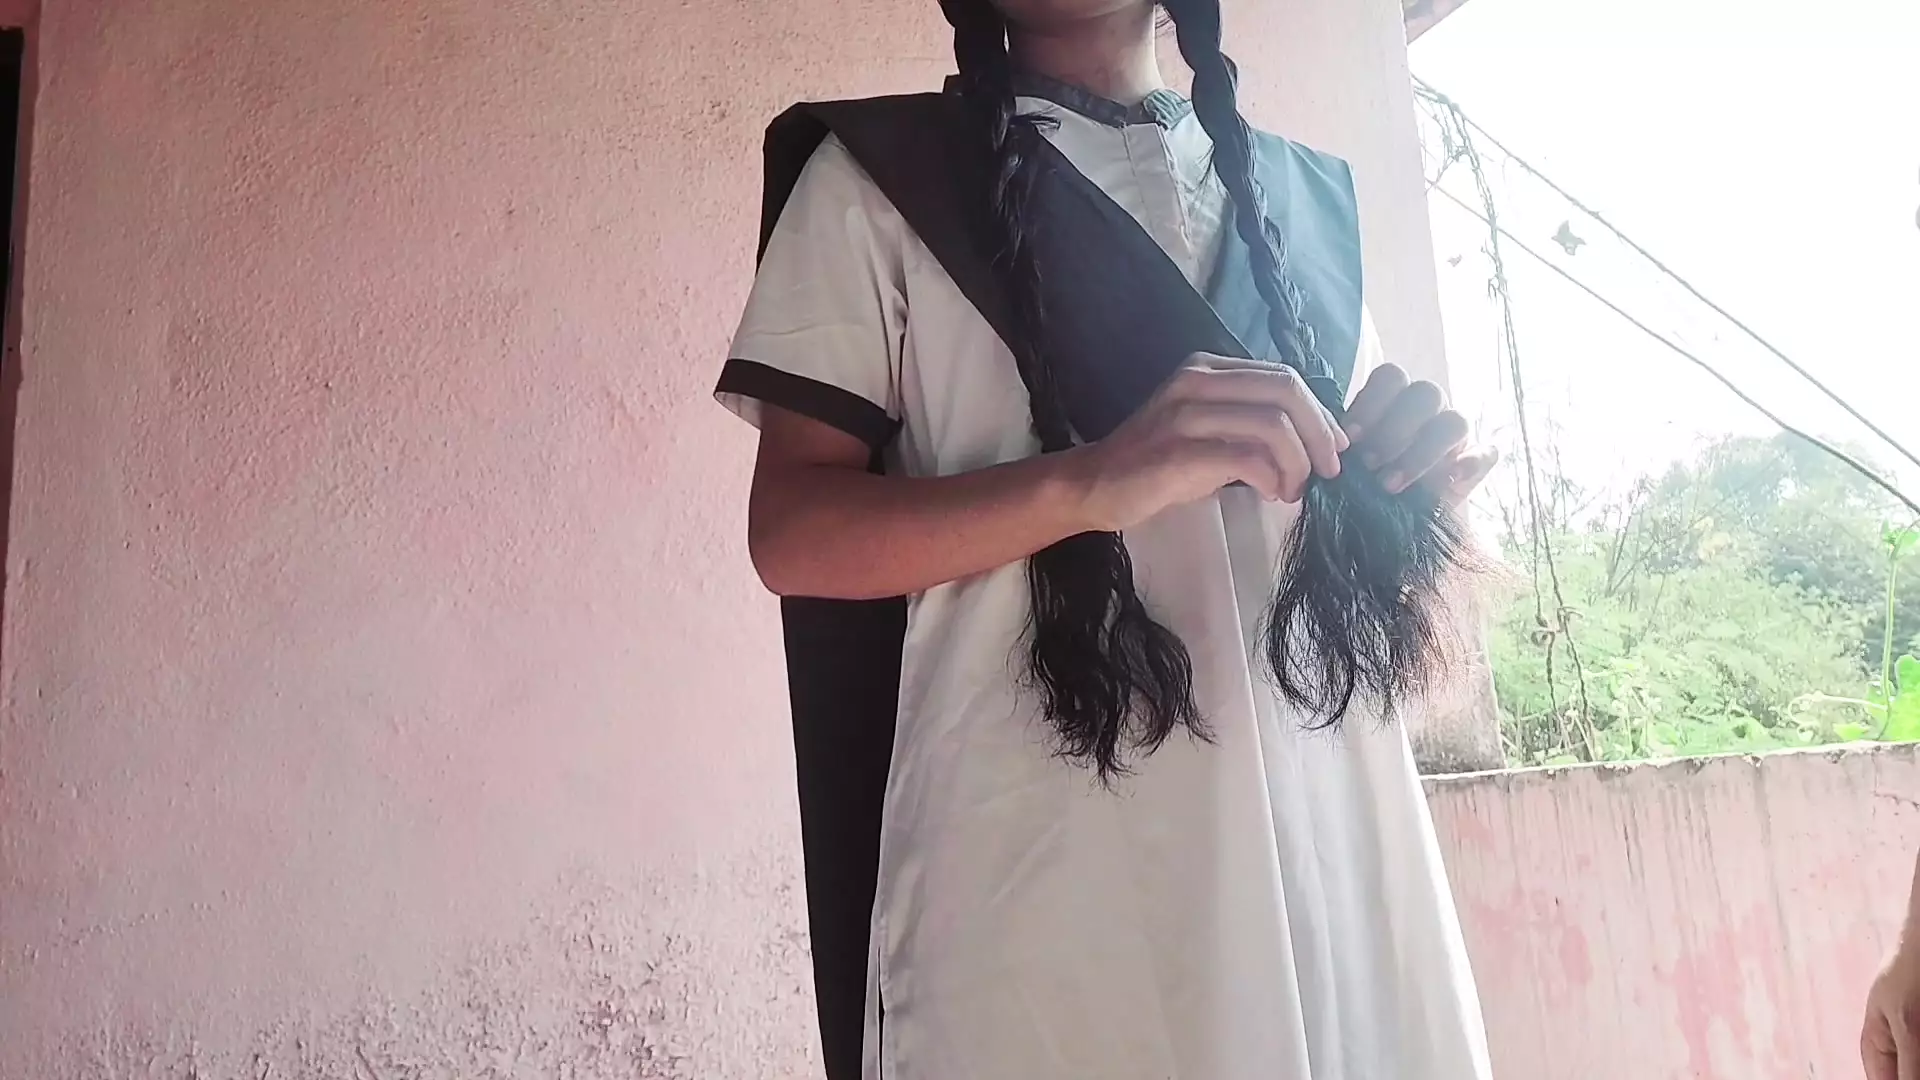 18 Age Collage Girls Xxx Videos - Indian college girl sex video watch online